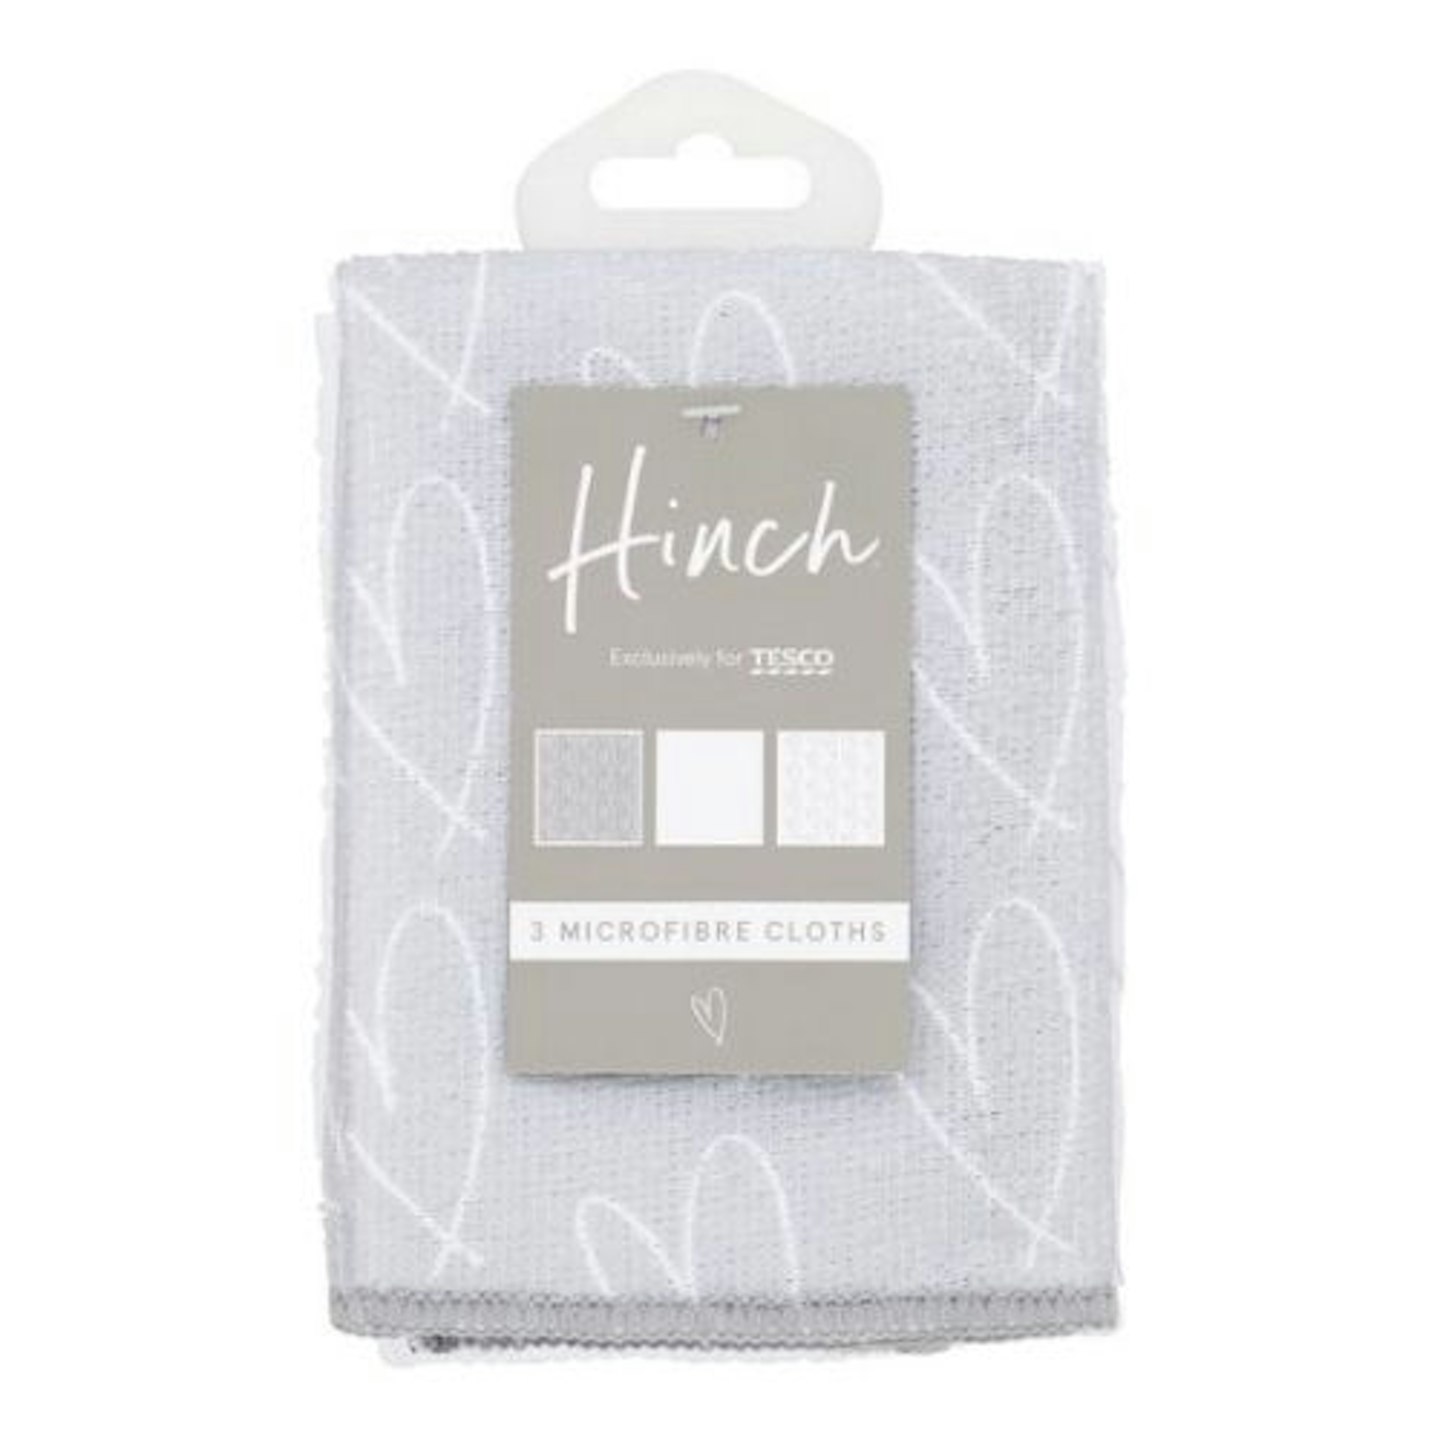 Hinch Microfibre Cloths